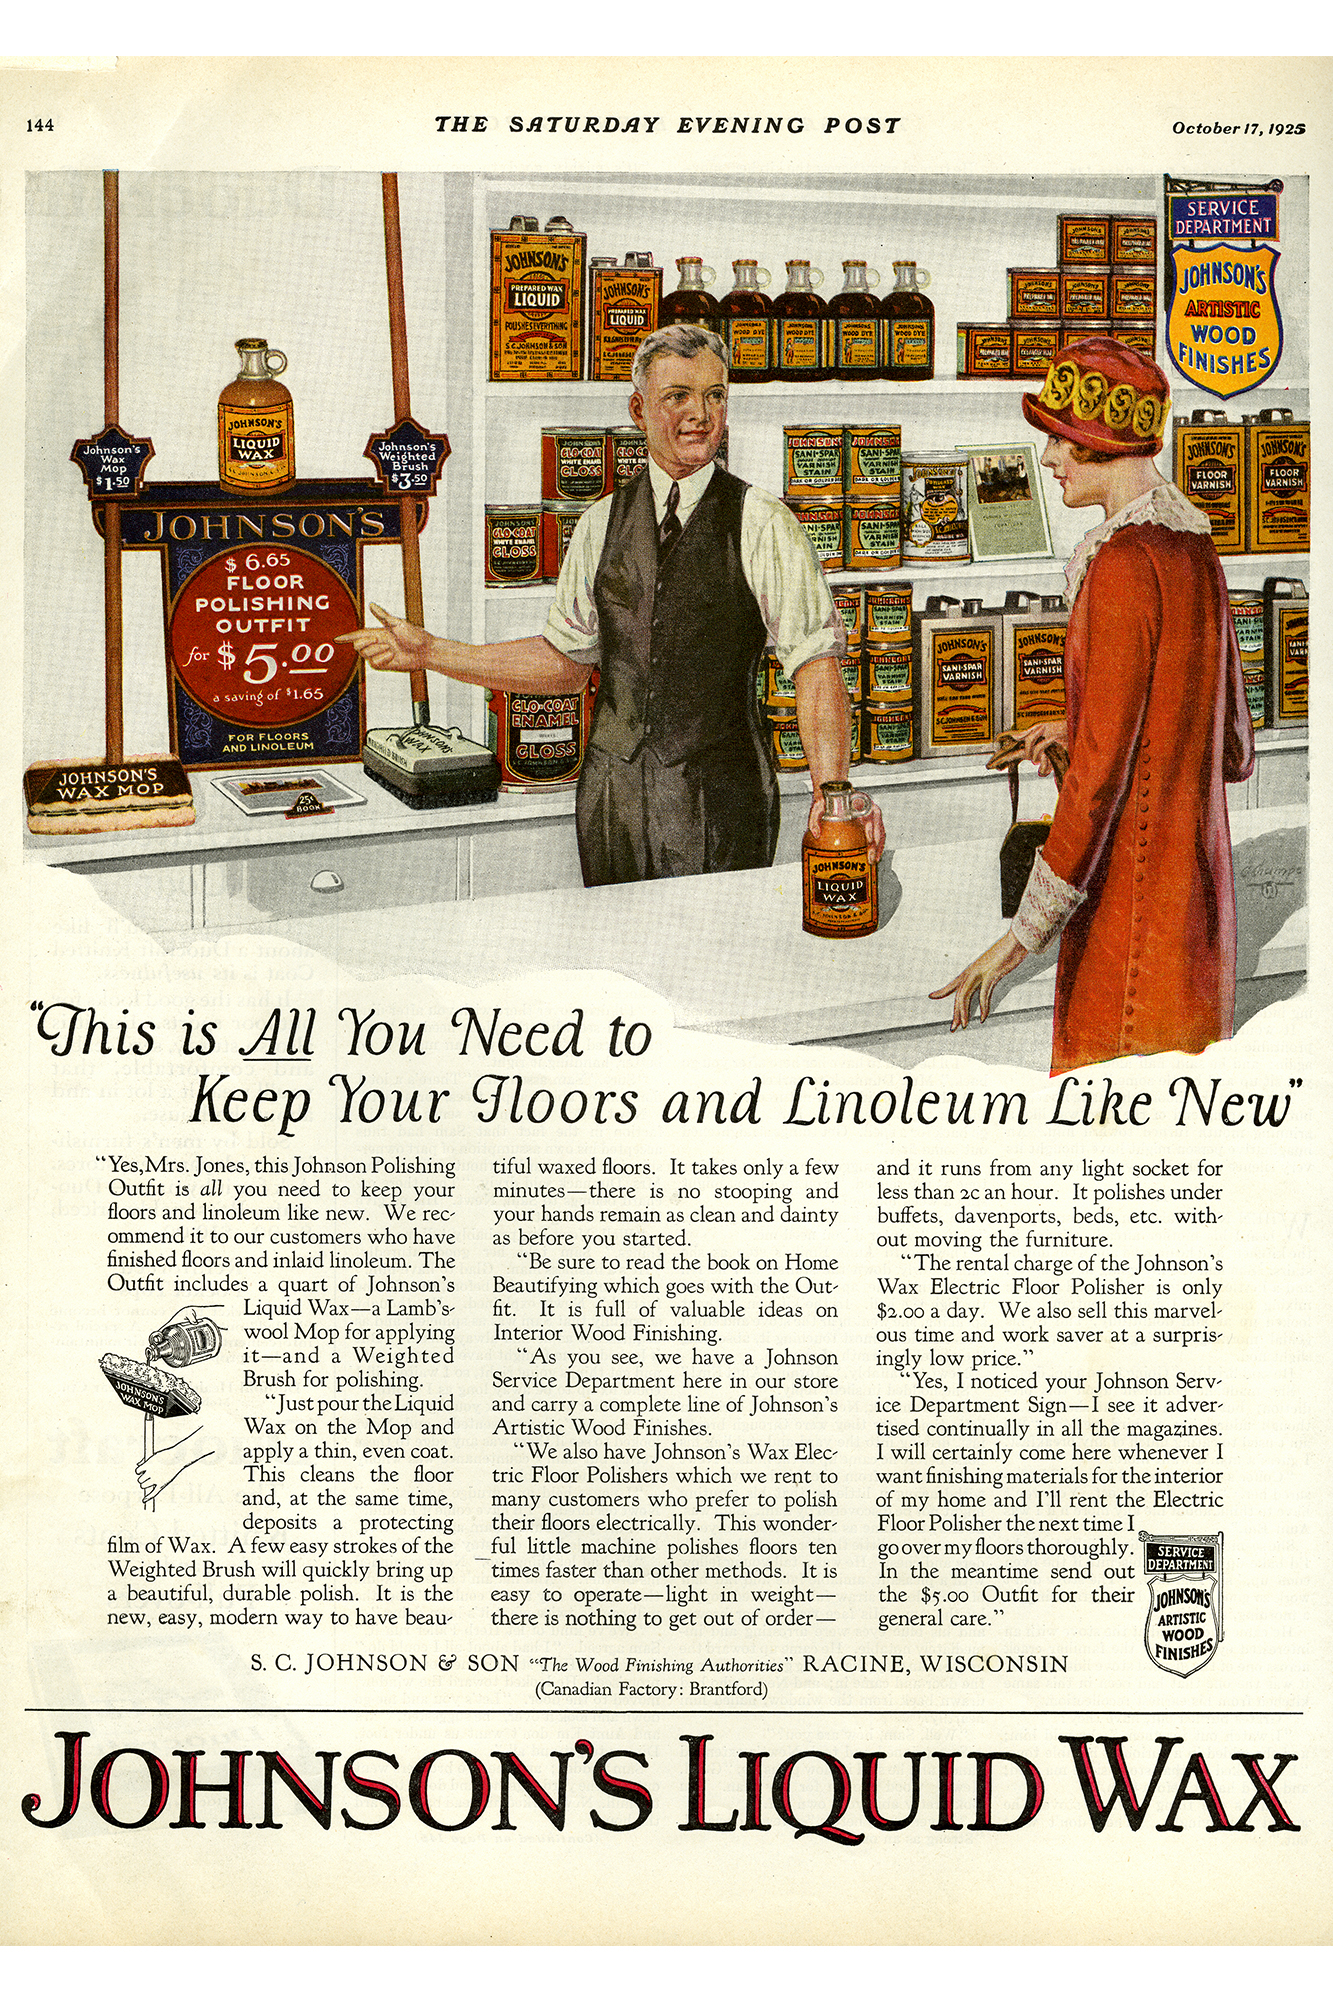 La publicité rétro du cirage liquide Johnson’s Wax de 1925